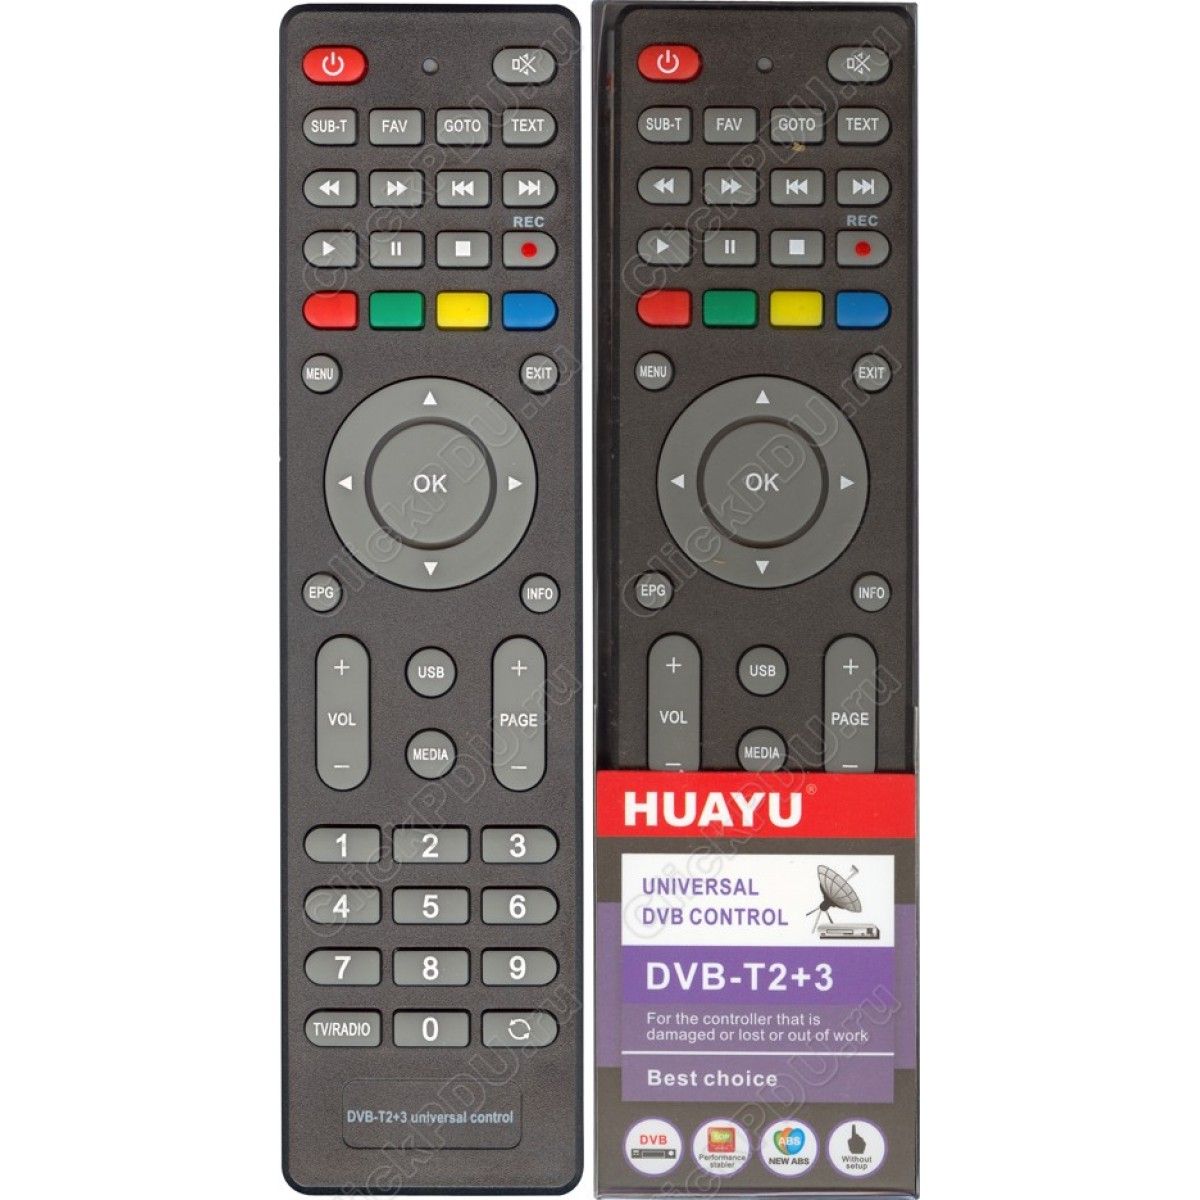 Пульт huayu dvb t2 tv. Универсальный пульт Huayu DVB-t2+3 корпус MTC dn300. Пульт Lumax b0302. Пульт универсальный Huayu для DVB-t2+3. Пульт Ду для МТС dn300, ds300a, dc300a.